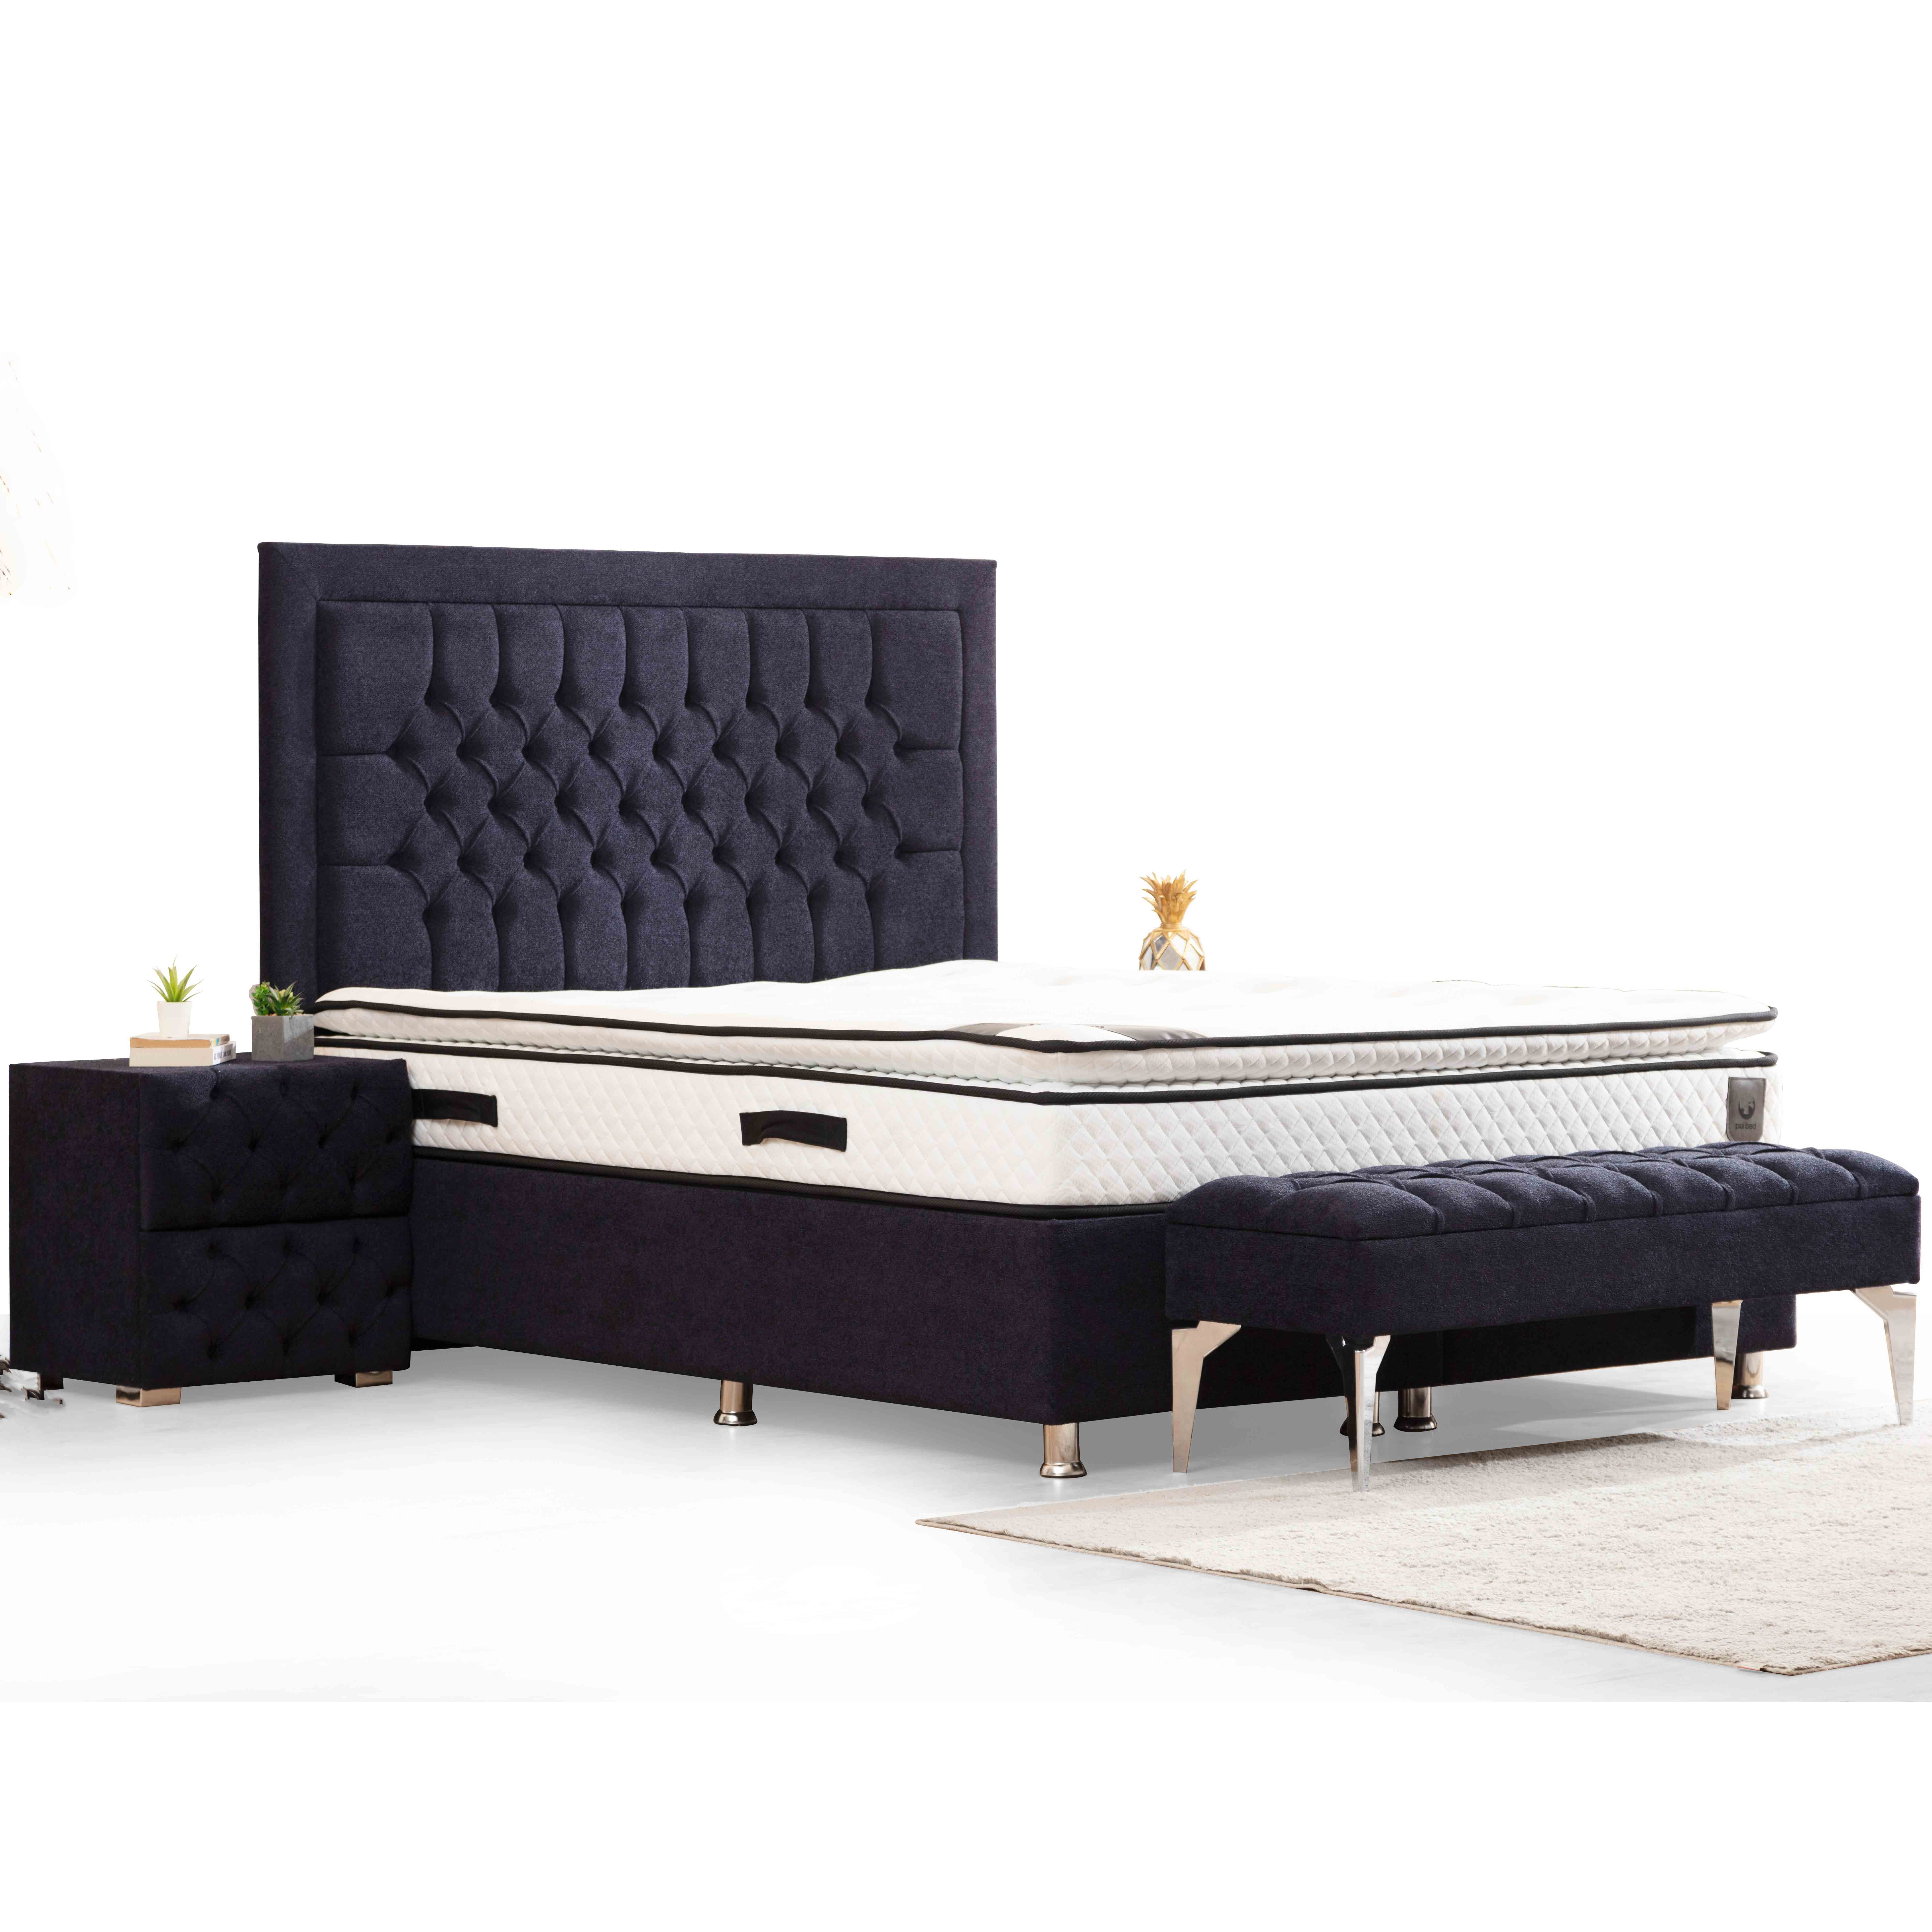 Astom Bed With Storage 90x190 cm